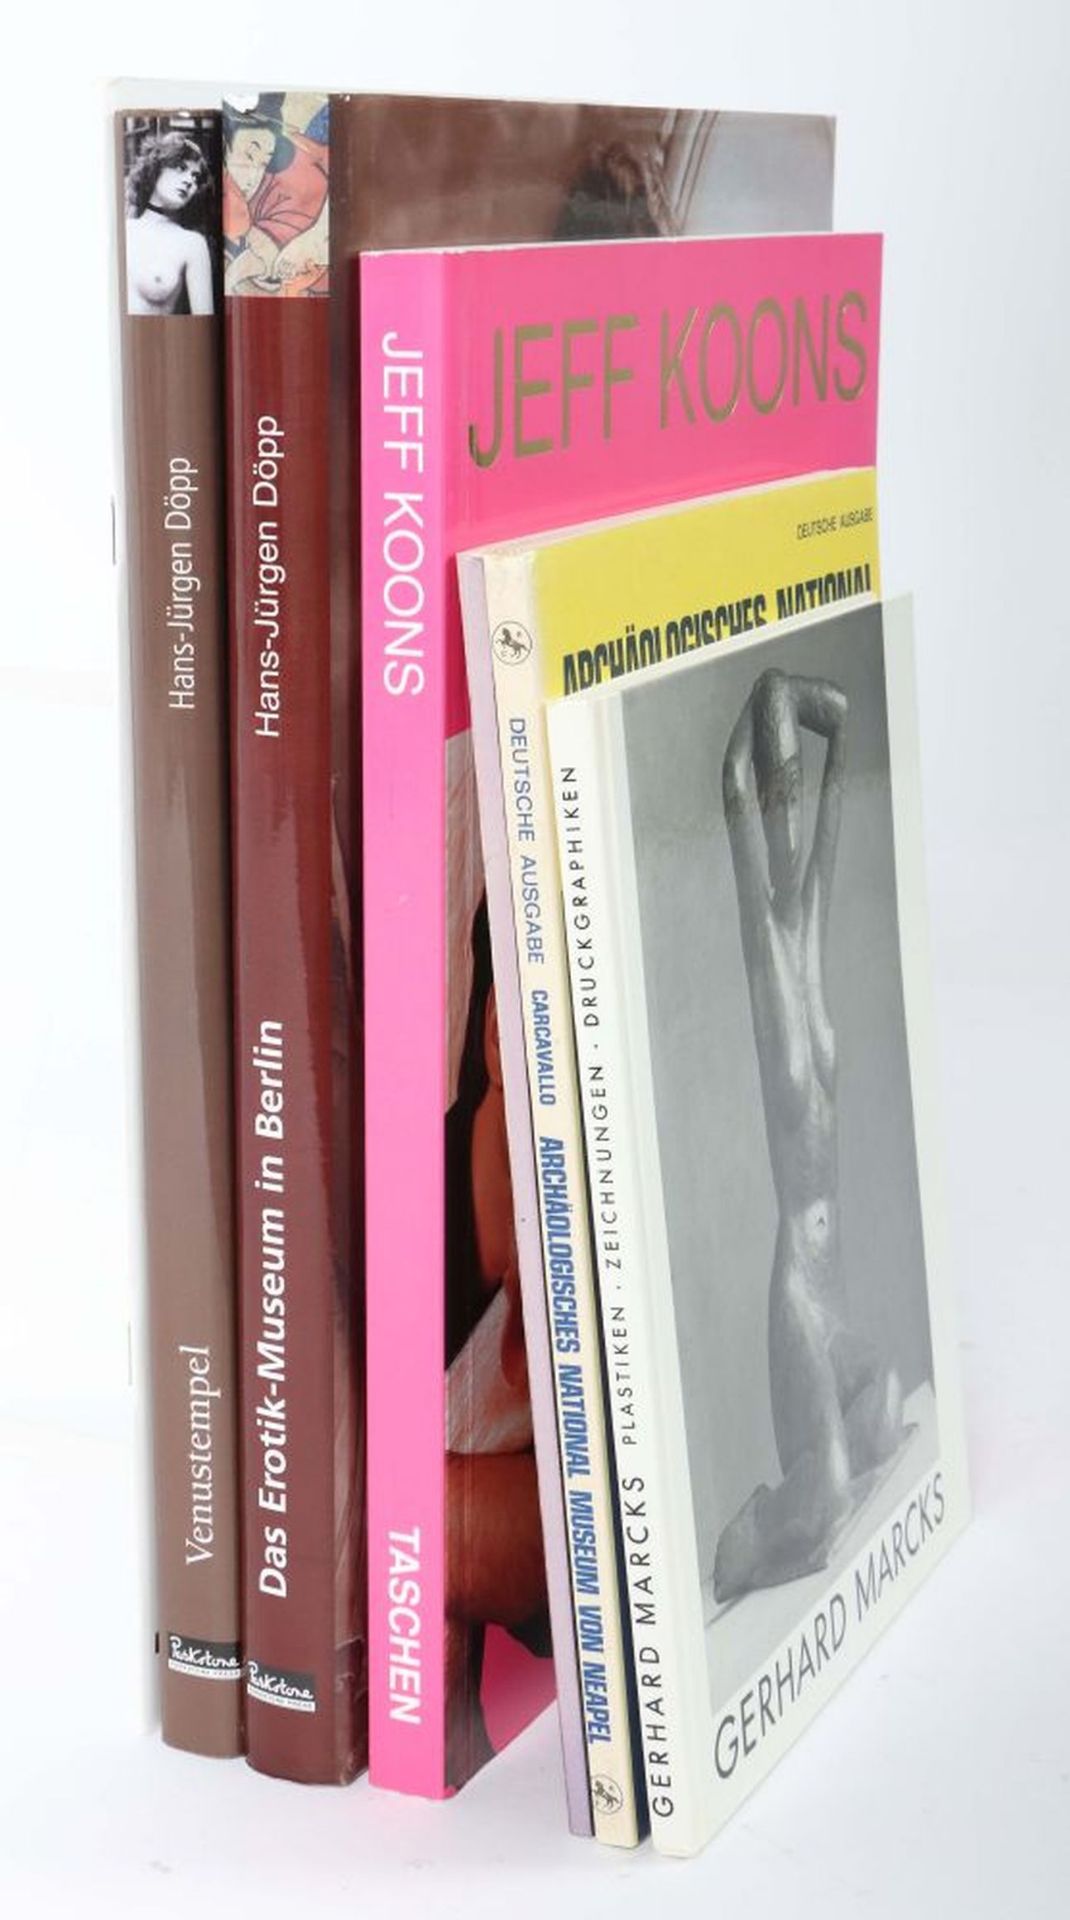 7 Kunstbücher Muthesius, Jeff Koons, - Bild 2 aus 2